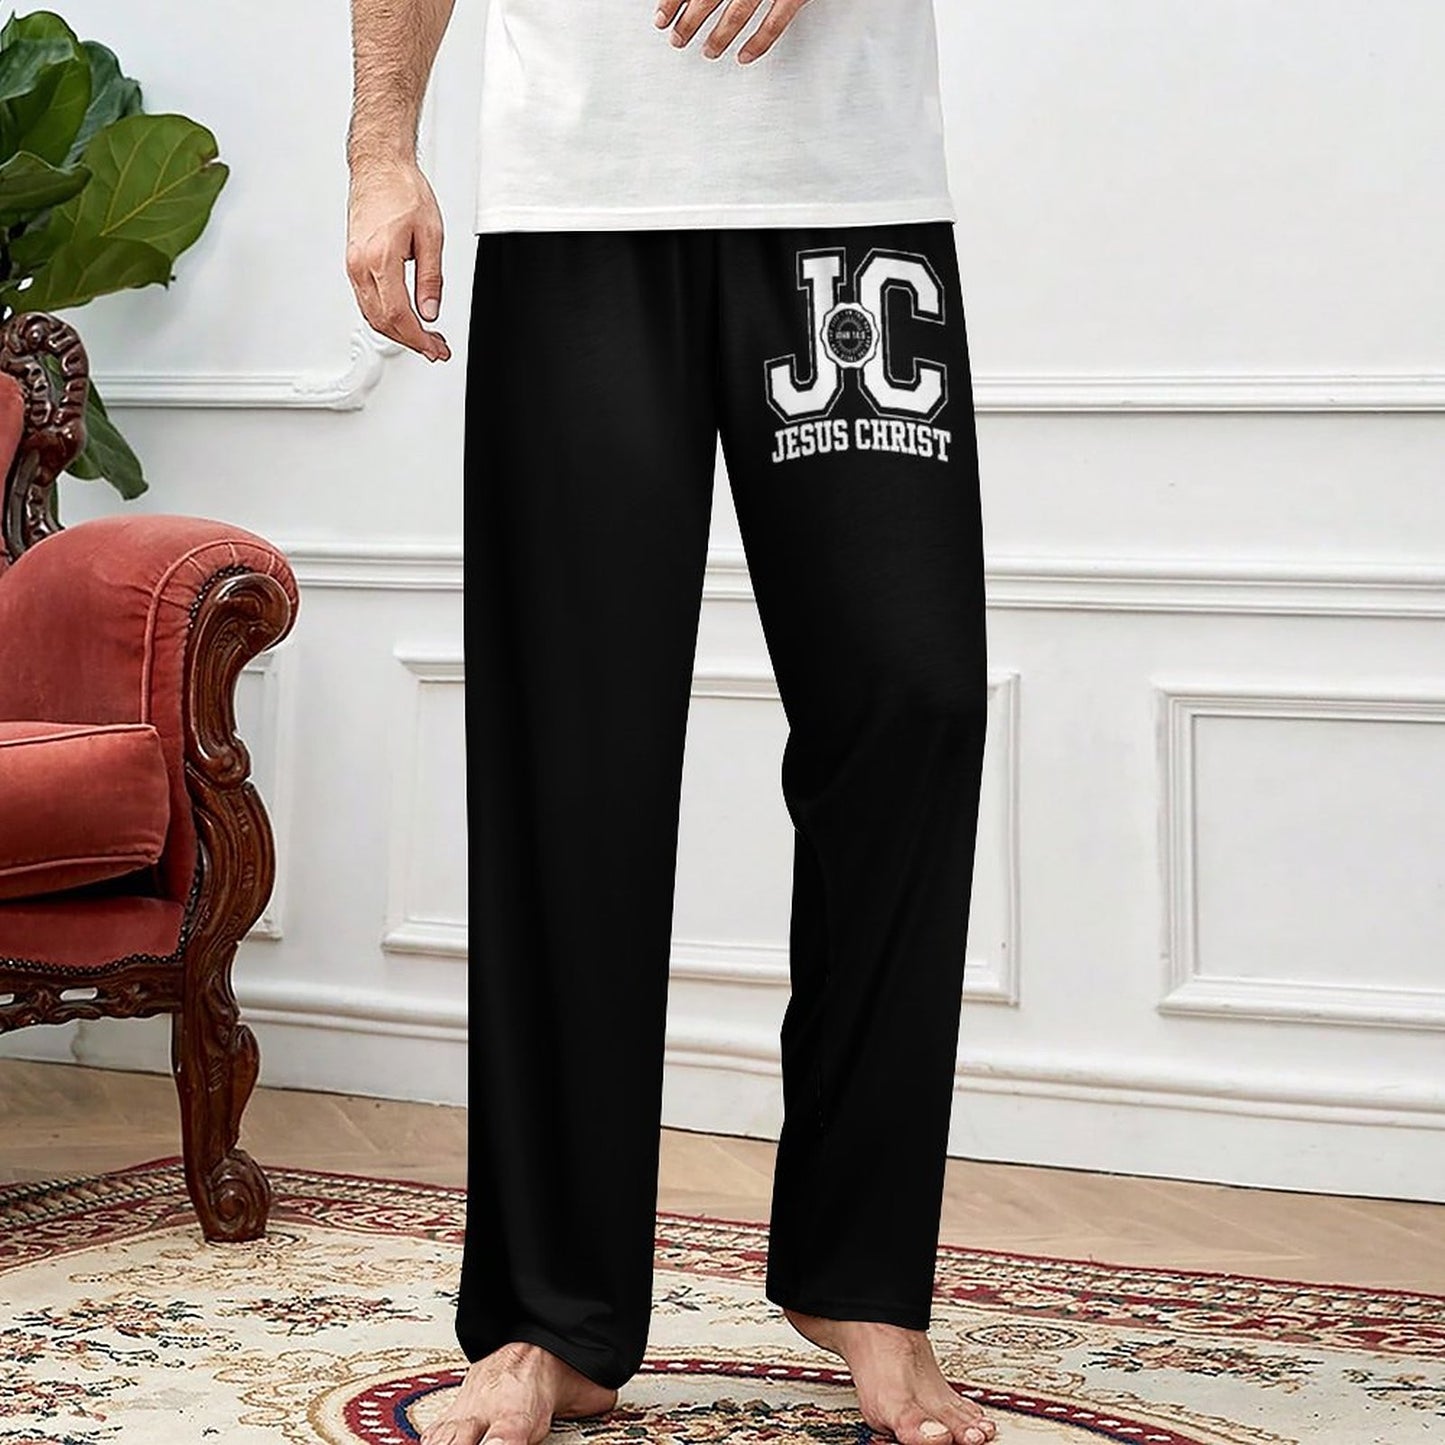 JC Jesus Christ Men's Christian Pajamas Pants